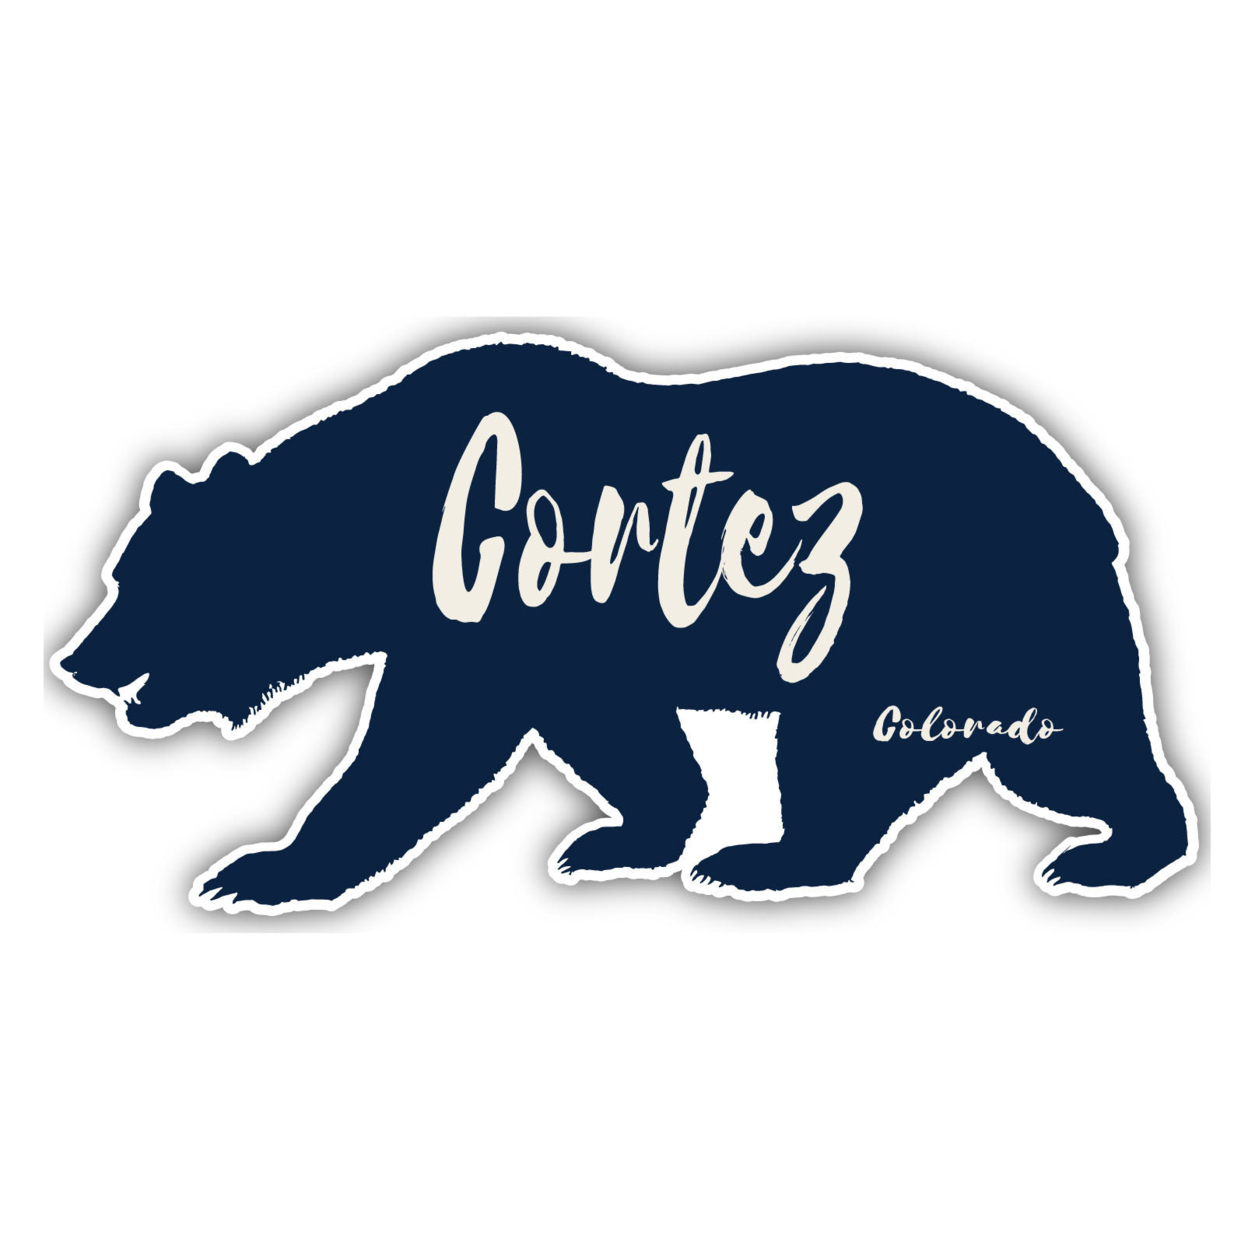 Cortez Colorado Souvenir Decorative Stickers (Choose Theme And Size) - 4-Pack, 10-Inch, Tent